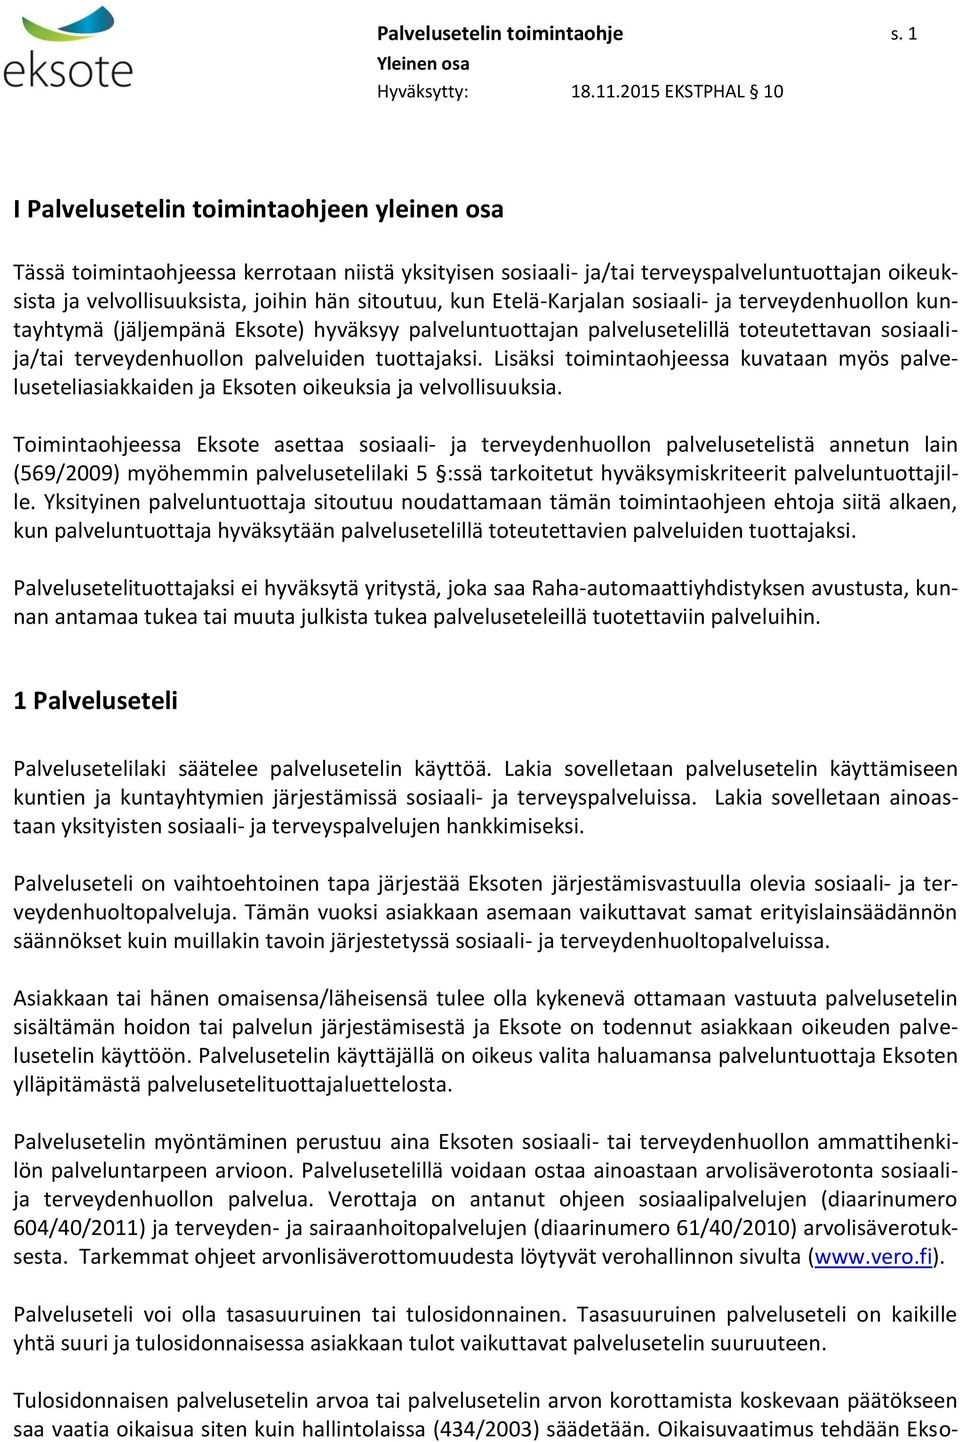 Etelä-Karjalan sosiaali- ja terveydenhuollon kuntayhtymä (jäljempänä Eksote) hyväksyy palveluntuottajan palvelusetelillä toteutettavan sosiaalija/tai terveydenhuollon palveluiden tuottajaksi.